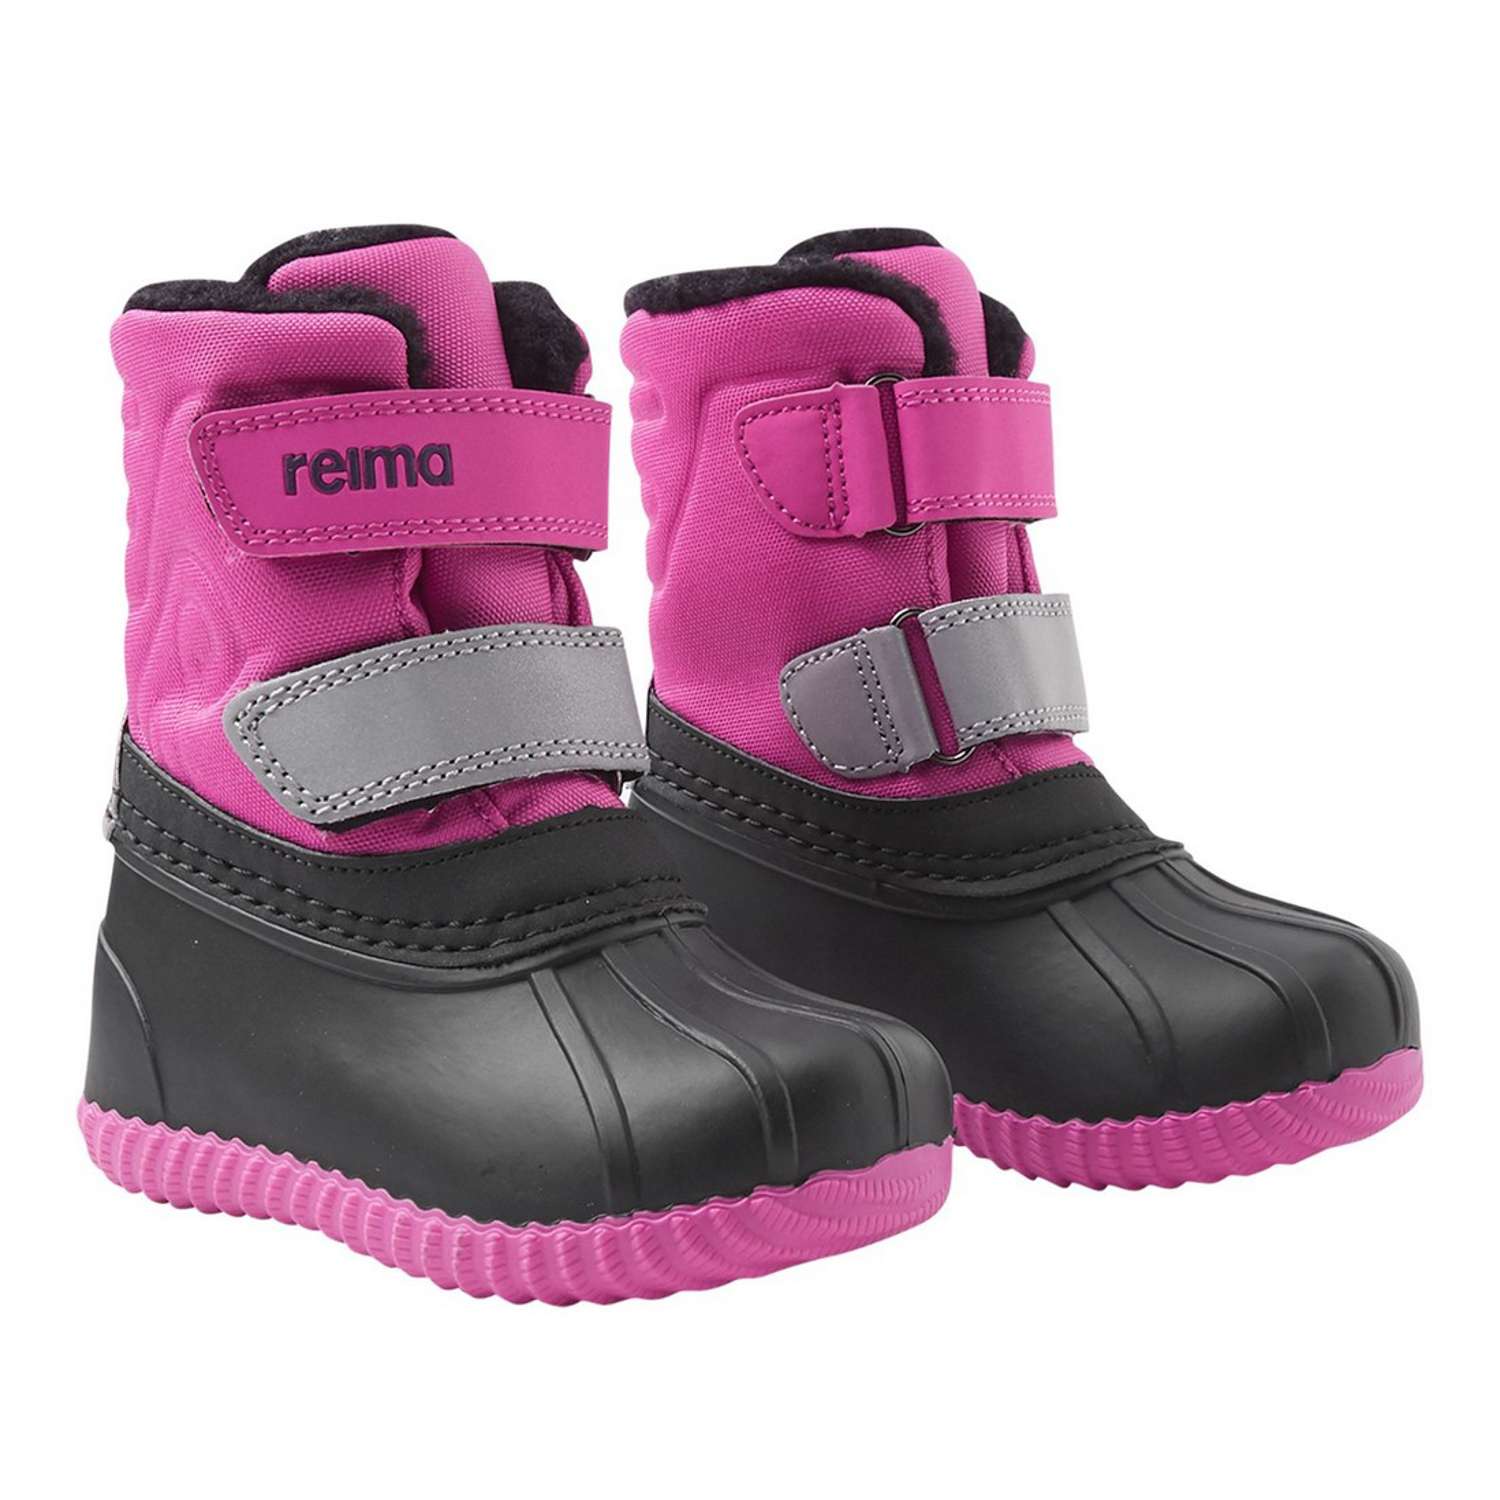 Ботинки Reima 5400037R-4810 - фото 4